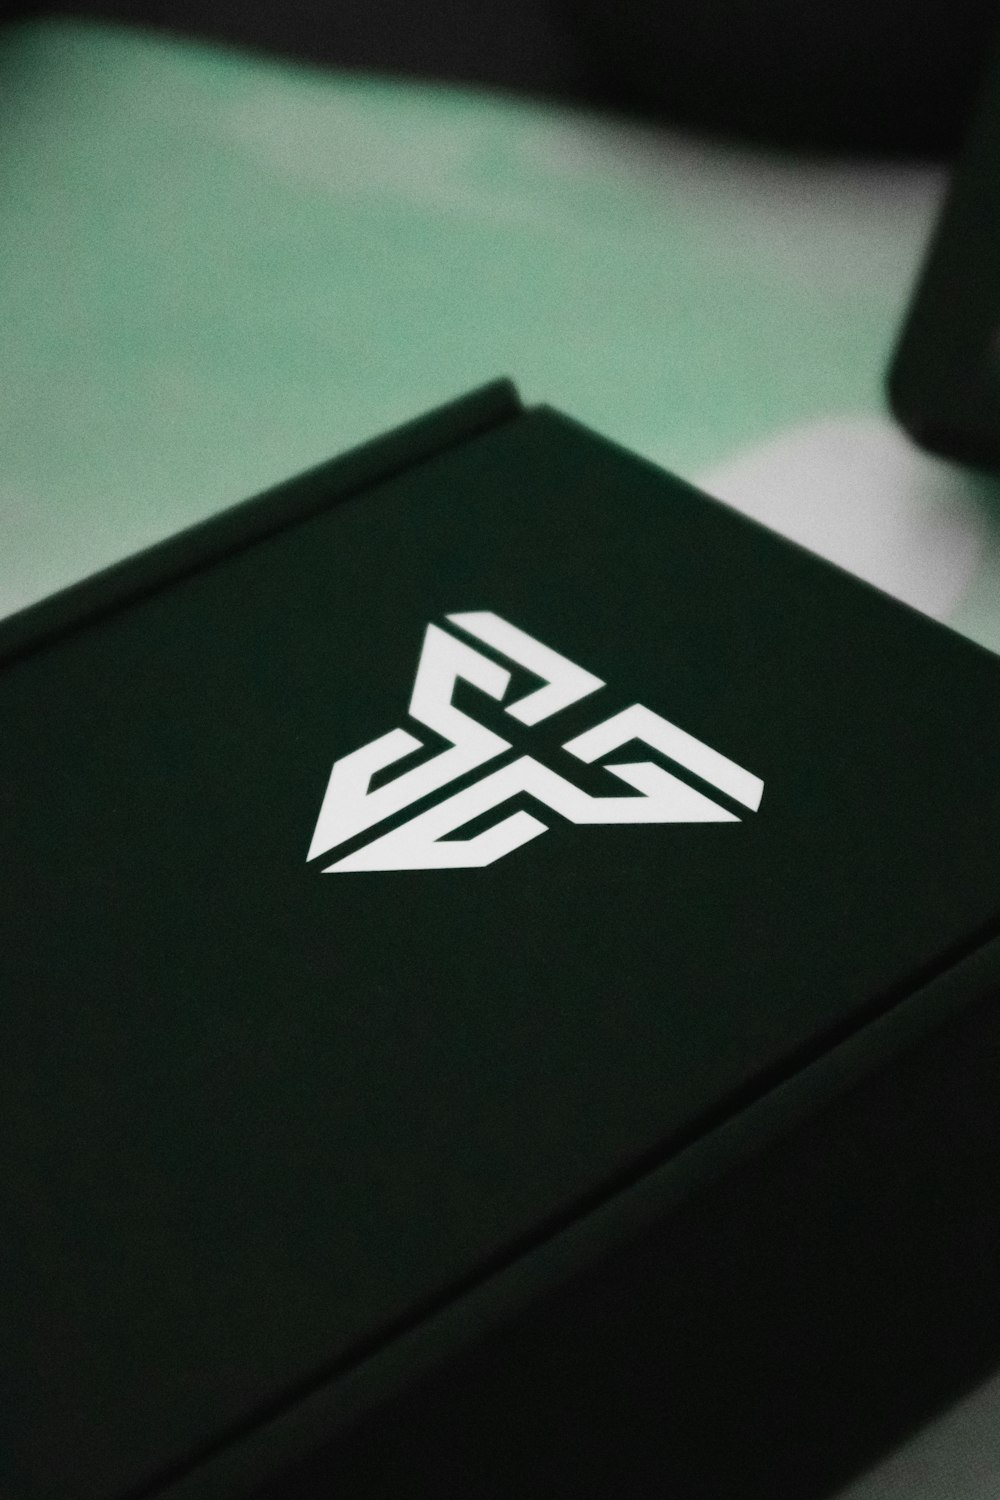 una caja negra con un logotipo blanco